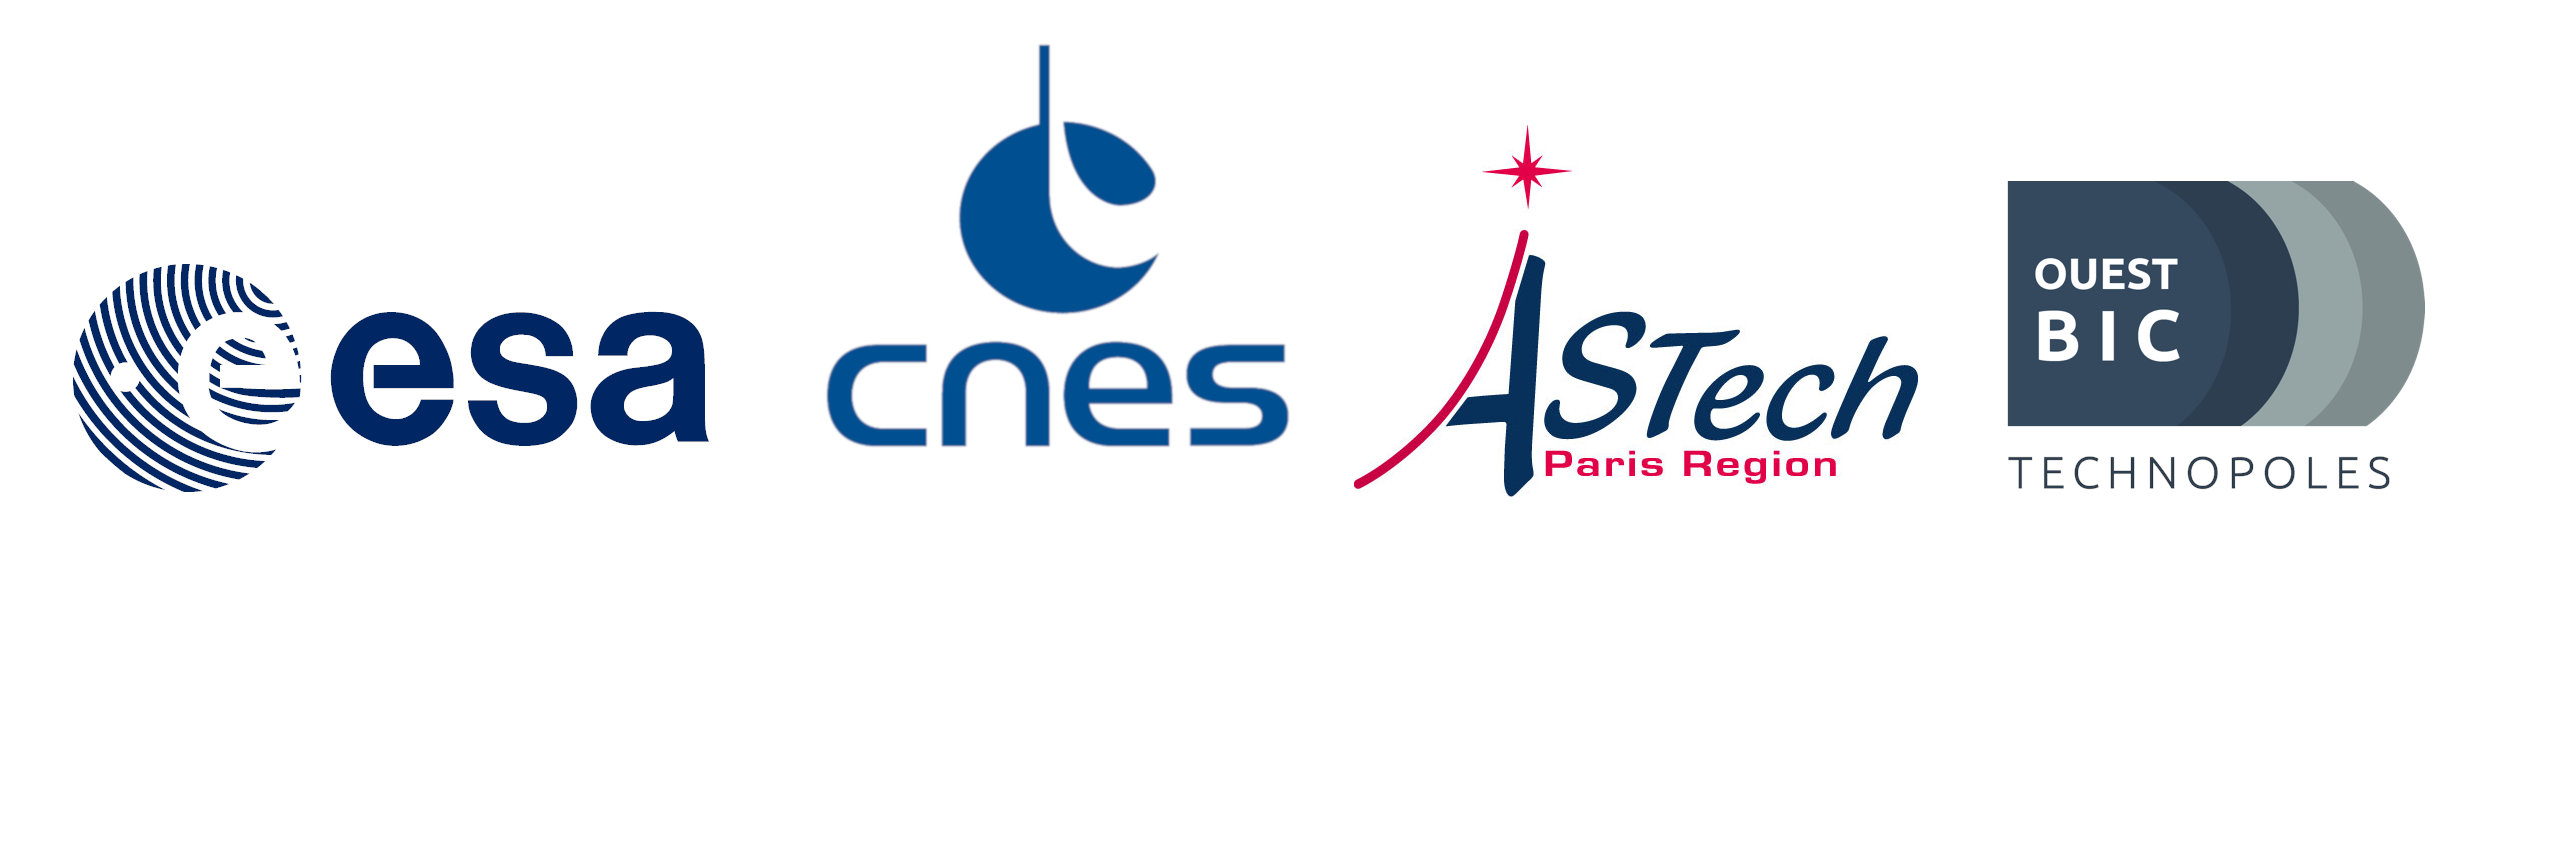 ESA-CNES-ASTechnologies-Ouest-Bic-Technopoles